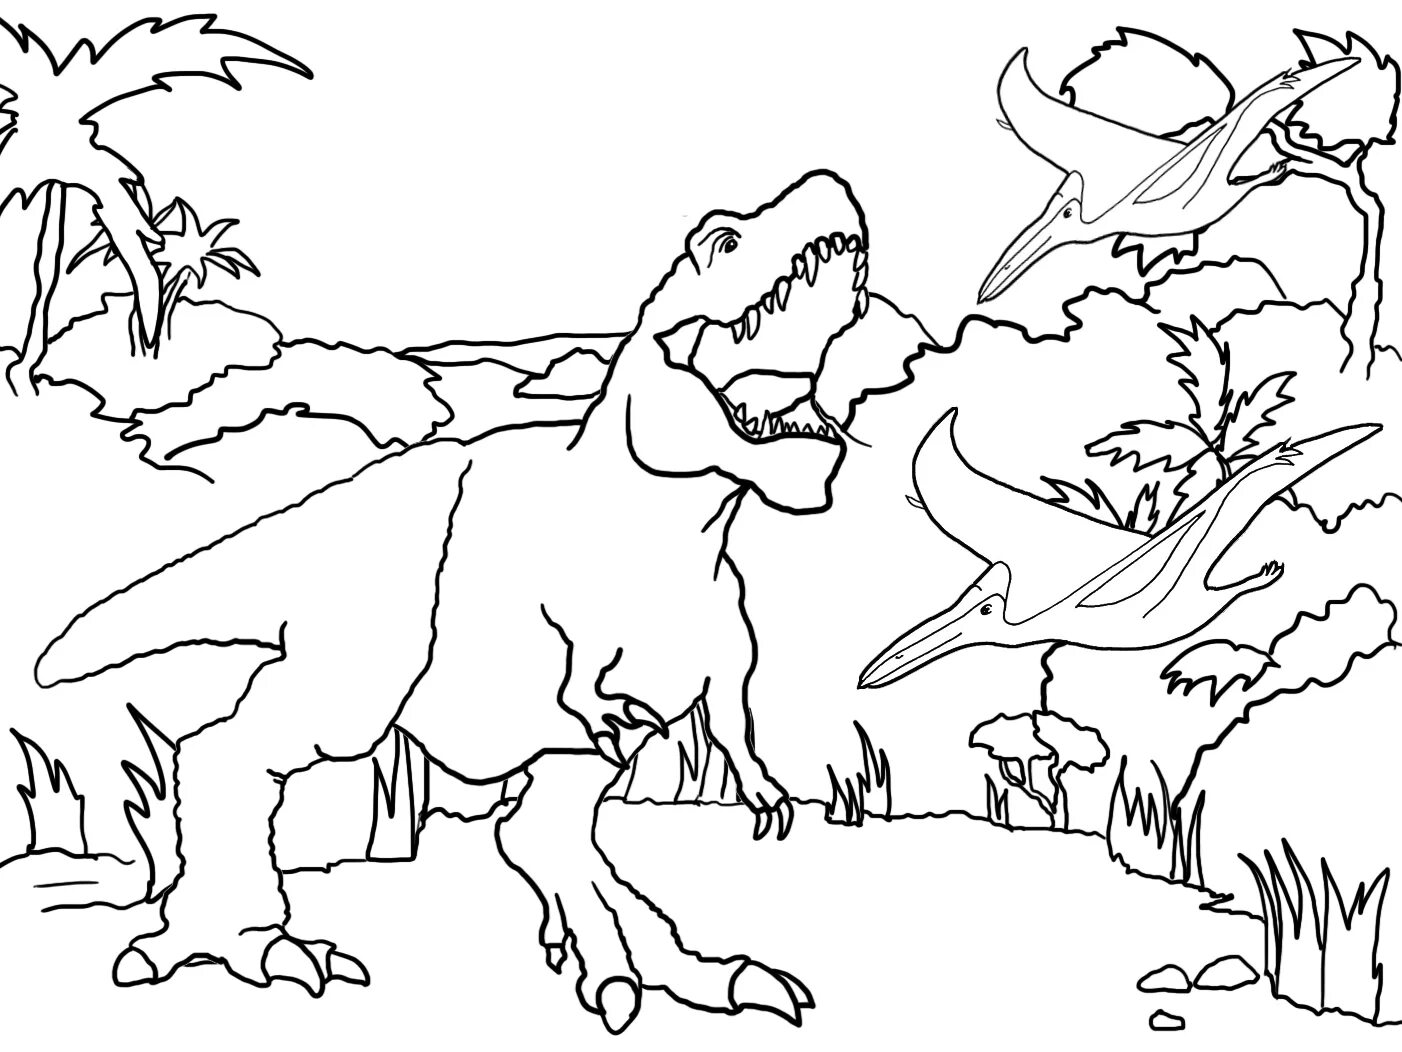 Раскраски динозавры а4. Тарбозавр разукрашка. Раскраски для детей Тарбозавр. Раскраски для мальчиков Тарбозавр. Тарбозавр раскраска динозавра.